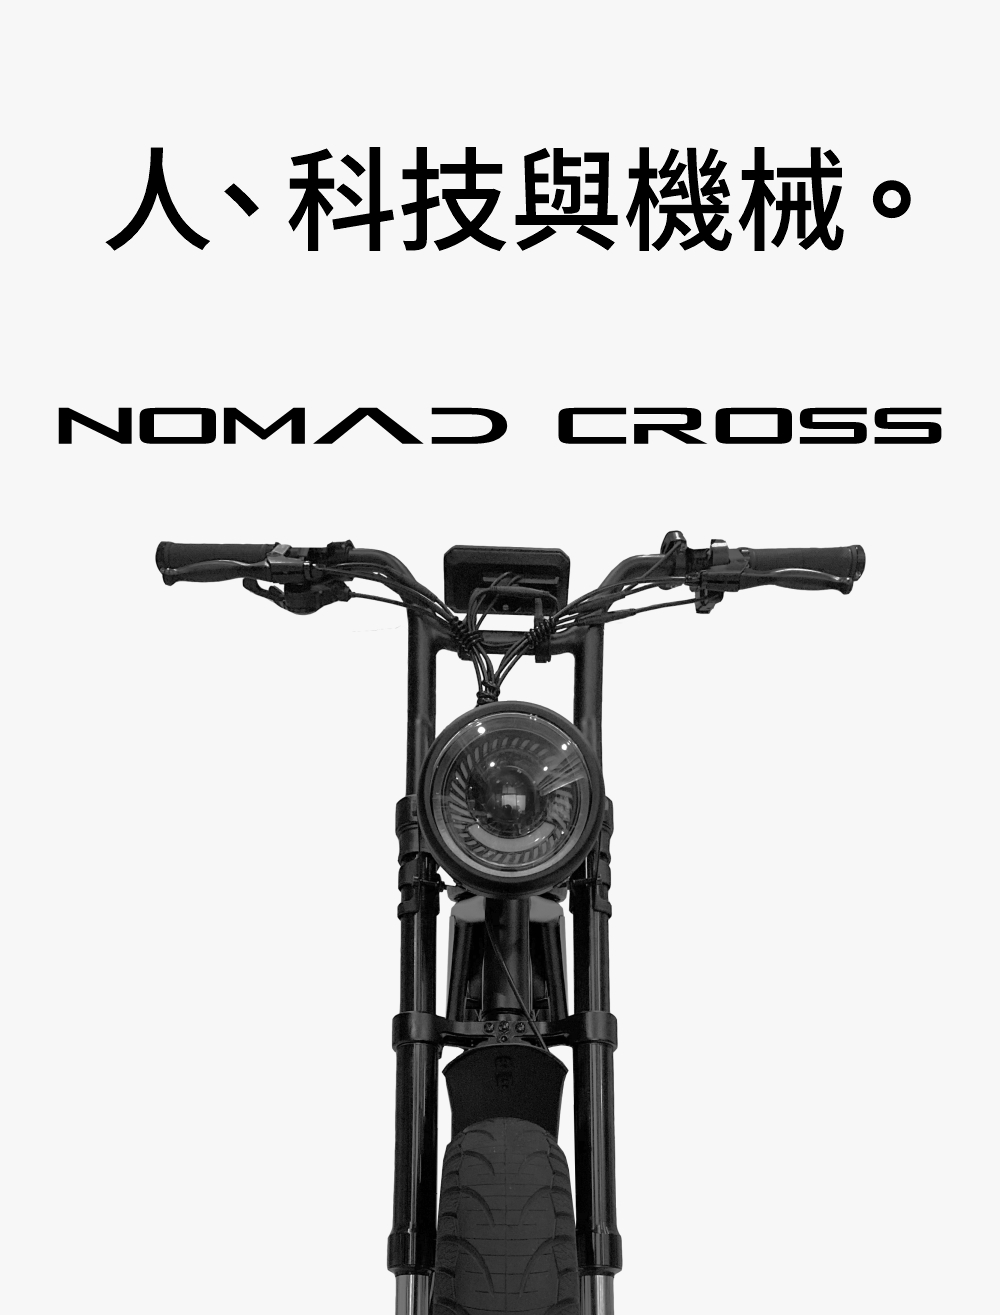 OMVOS Nomad Cross pure 次世代電動二輪